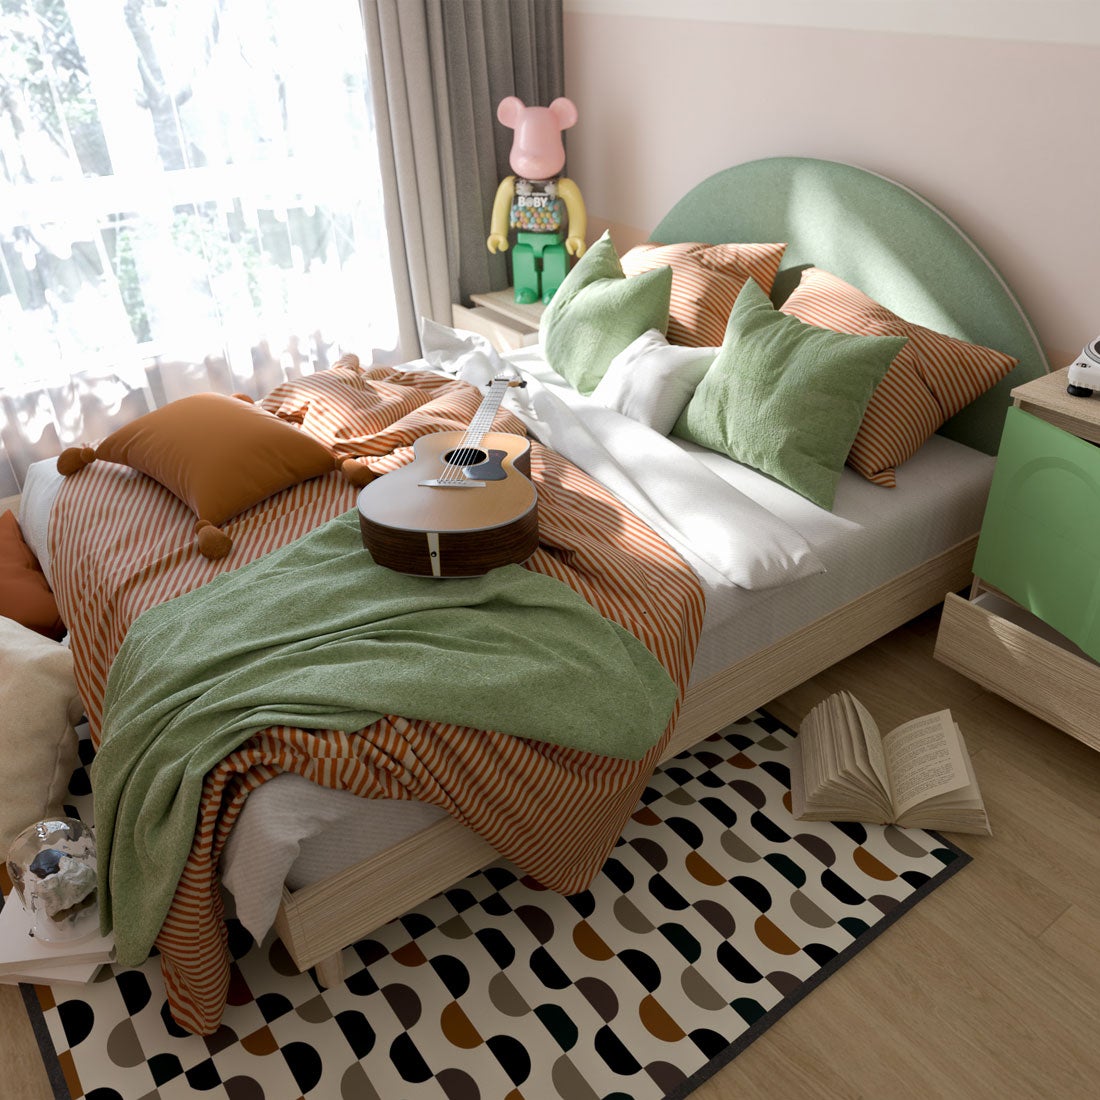 เตียงนอนหัวเบาะ 5 ฟุต รุ่น Bingsoo เบาะเขียว สีไม้อ่อน4